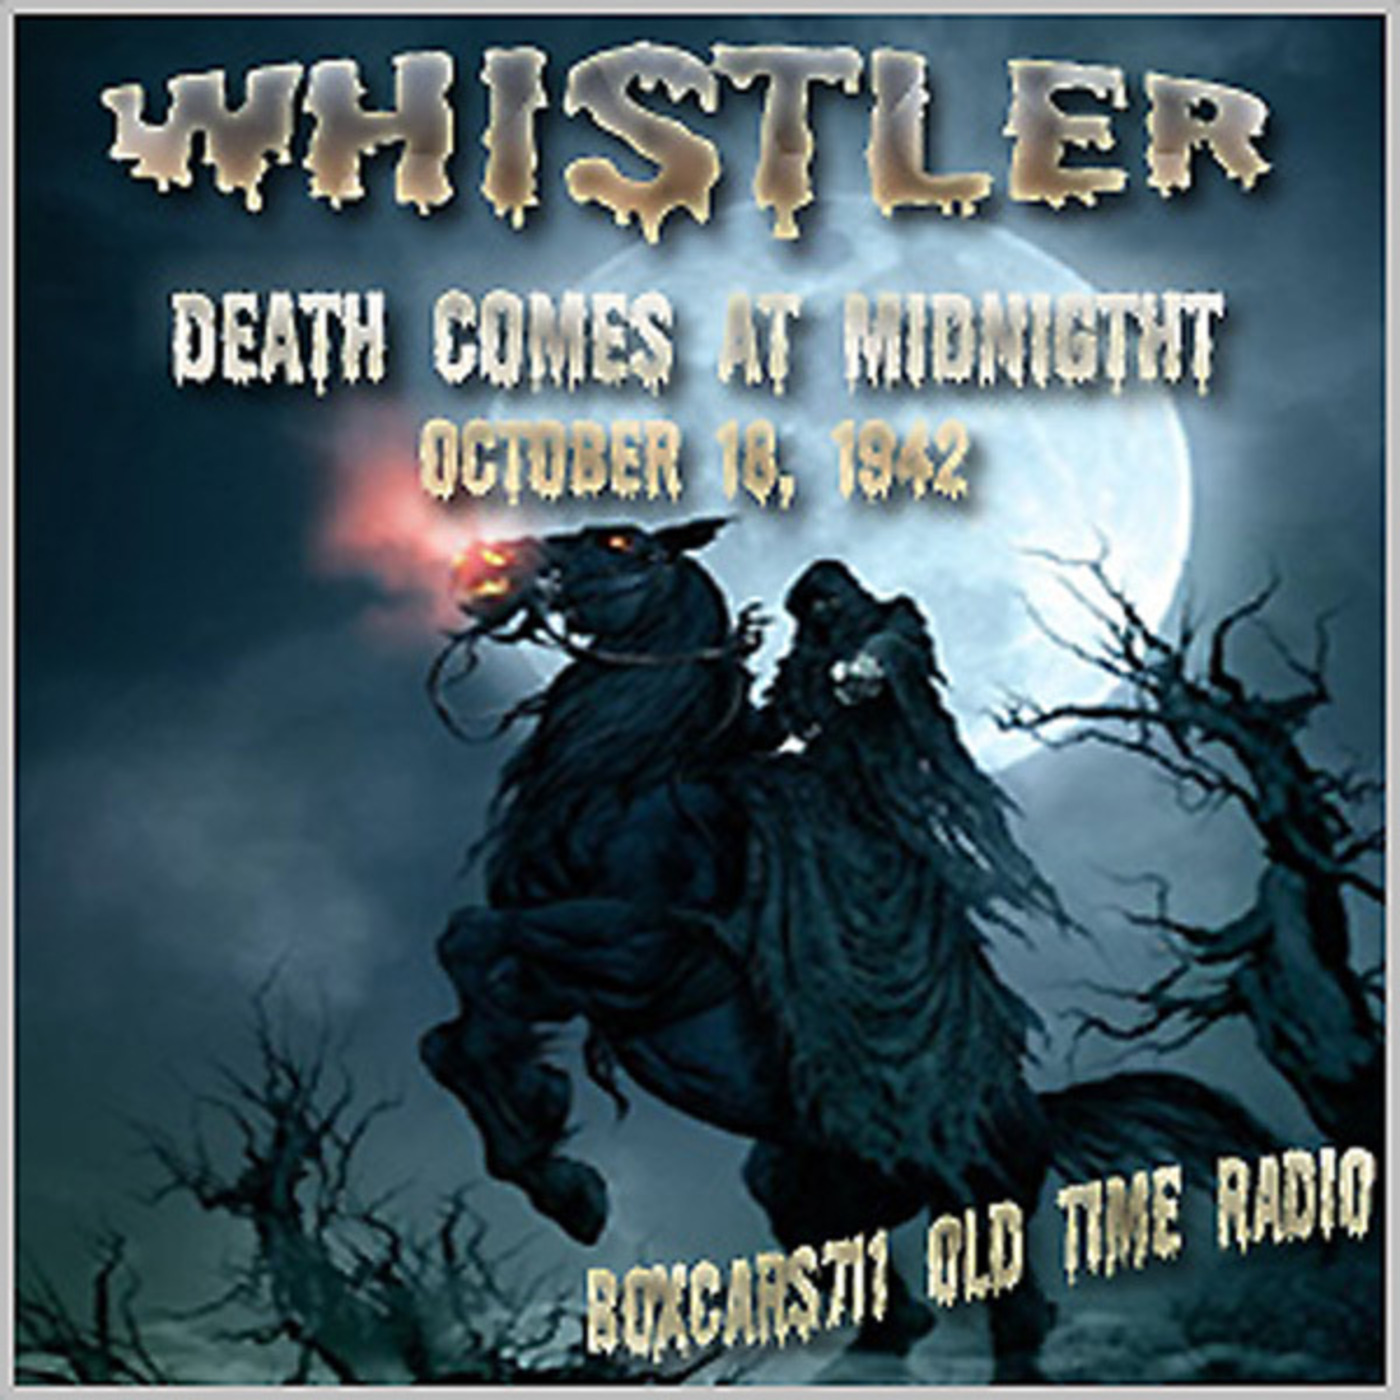 Episode 9537: Whistler - 